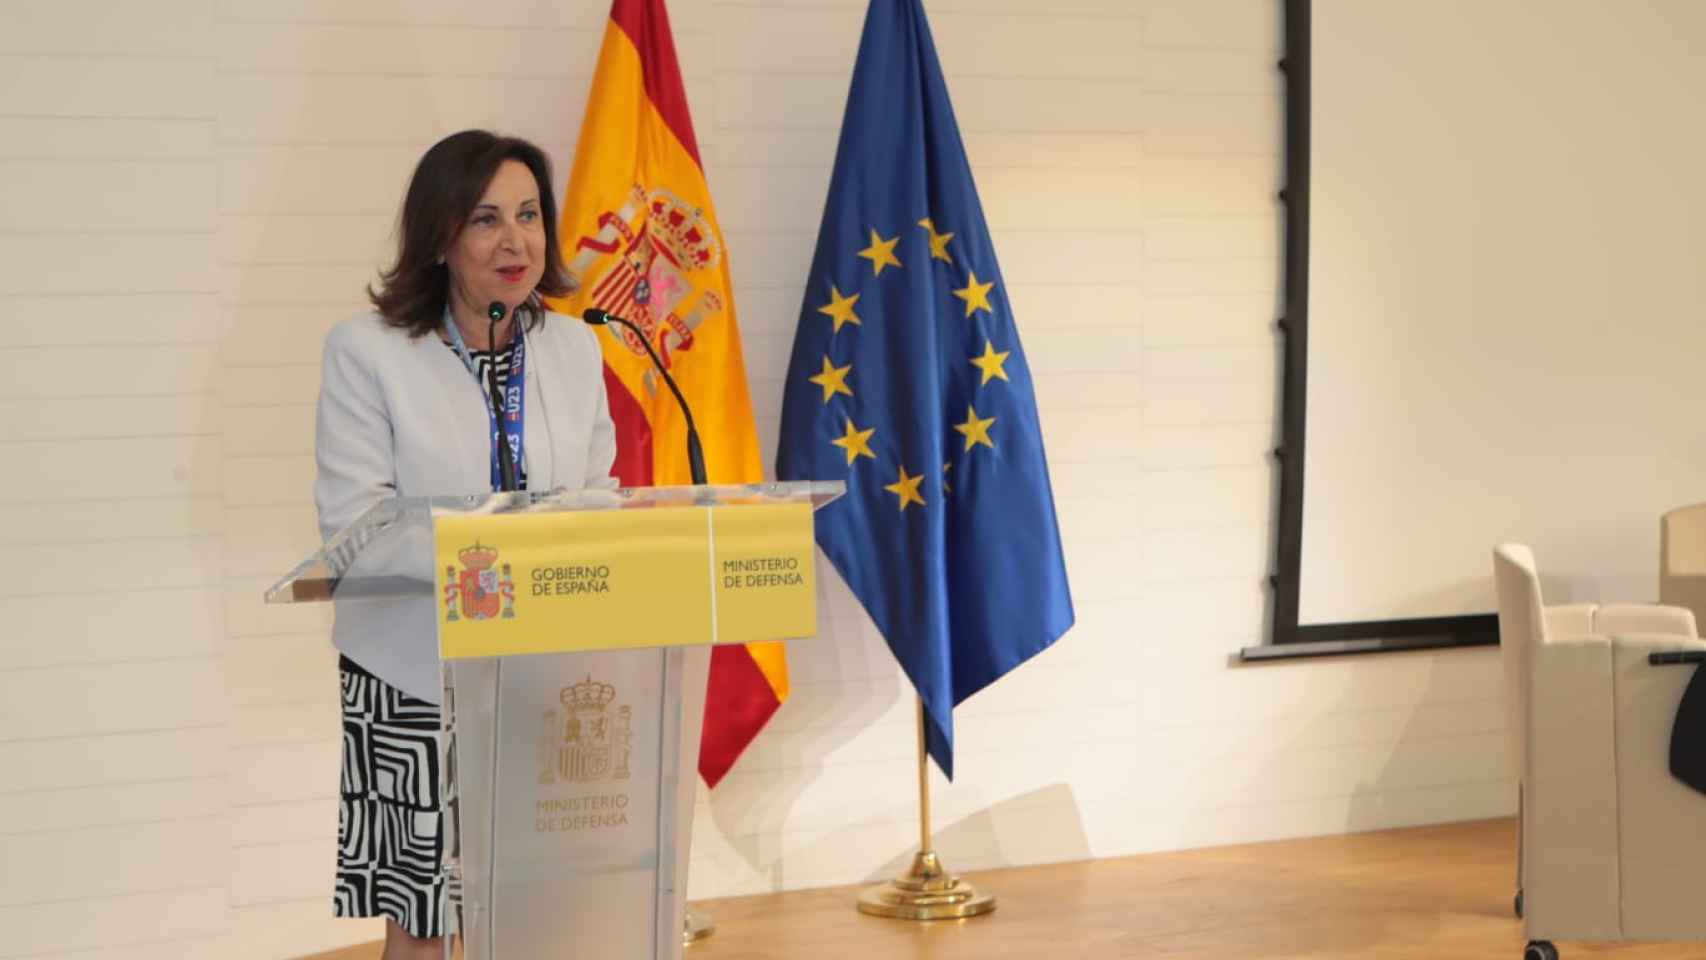 La ministra de Defensa, Margarita Robles, inaugurando el acto.